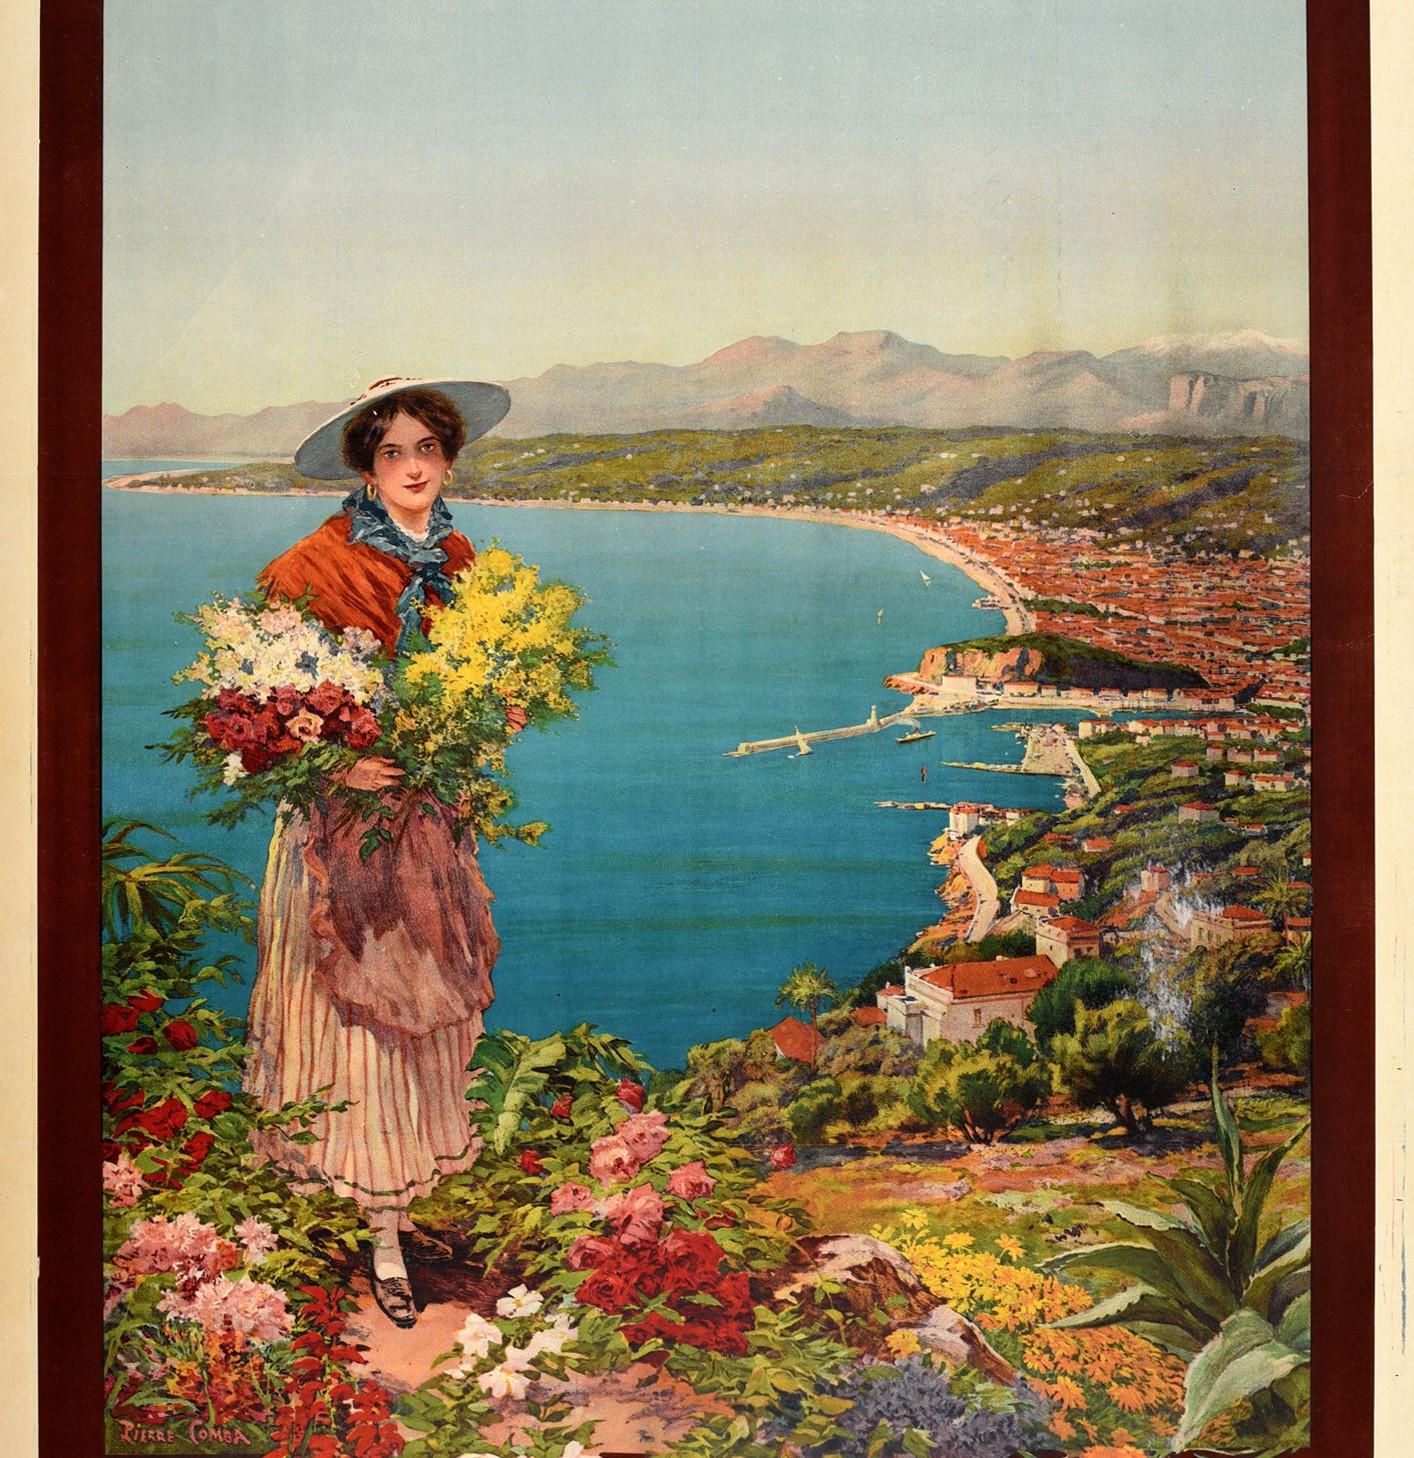 Affiche publicitaire originale pour Nice Reine de la Côte d'Azur Fetes Sports Tourisme / Queen of the French Riviera Holidays Sports Tourism. L'affiche présente une illustration de Pierre Comba (1859-1934) représentant une jeune femme regardant le